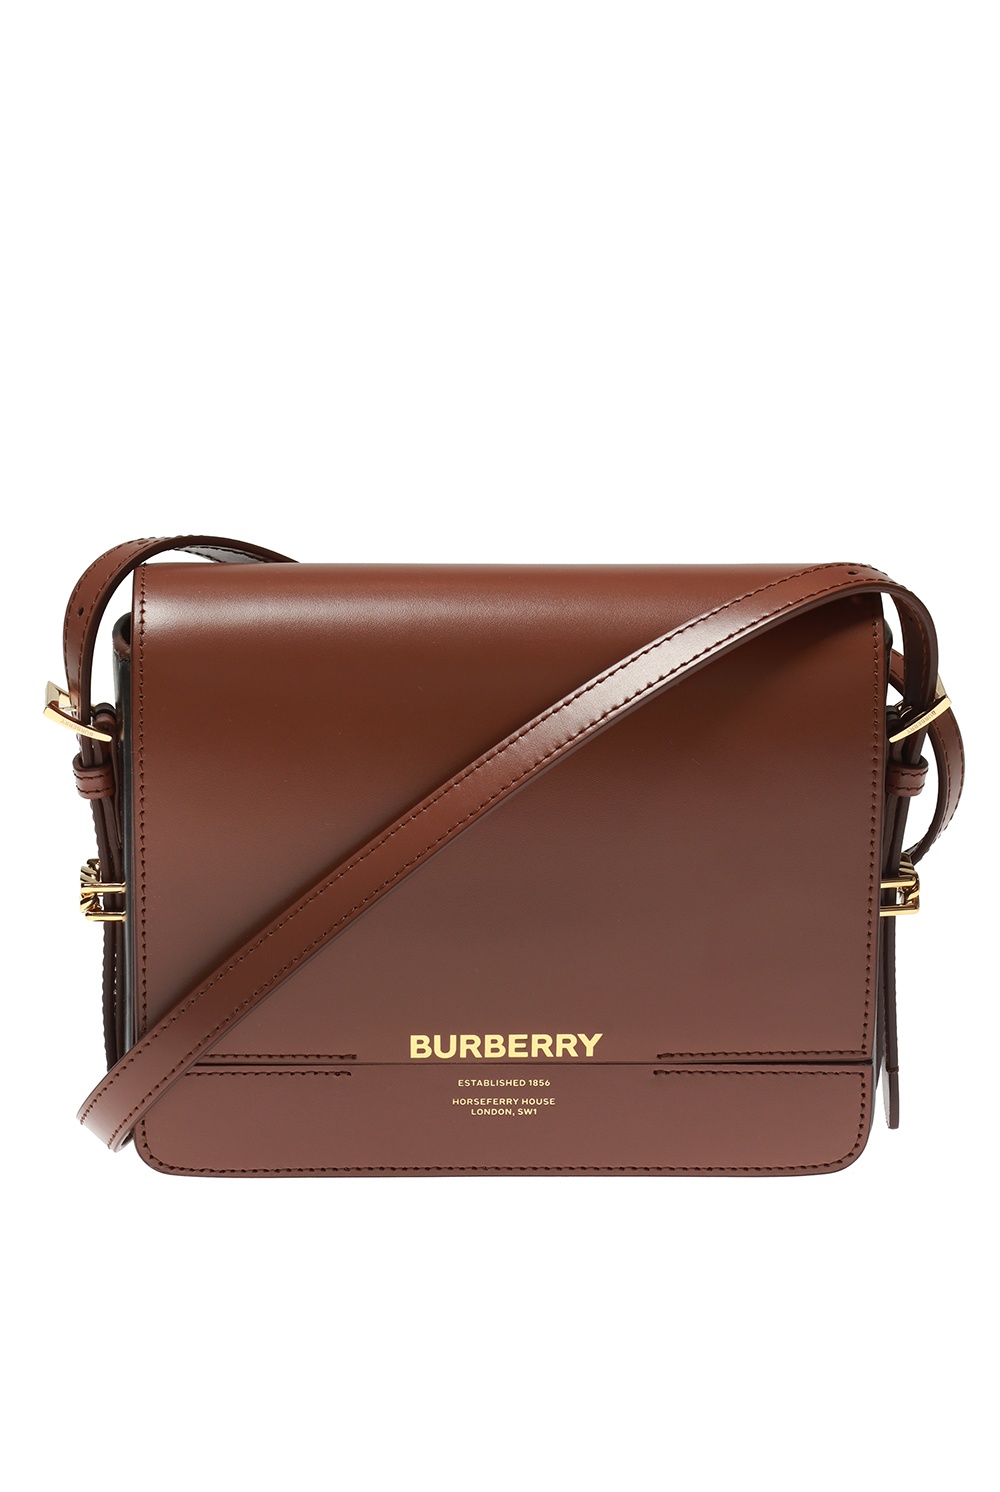 Burberry check-print Compact Messenger Bag - Brown